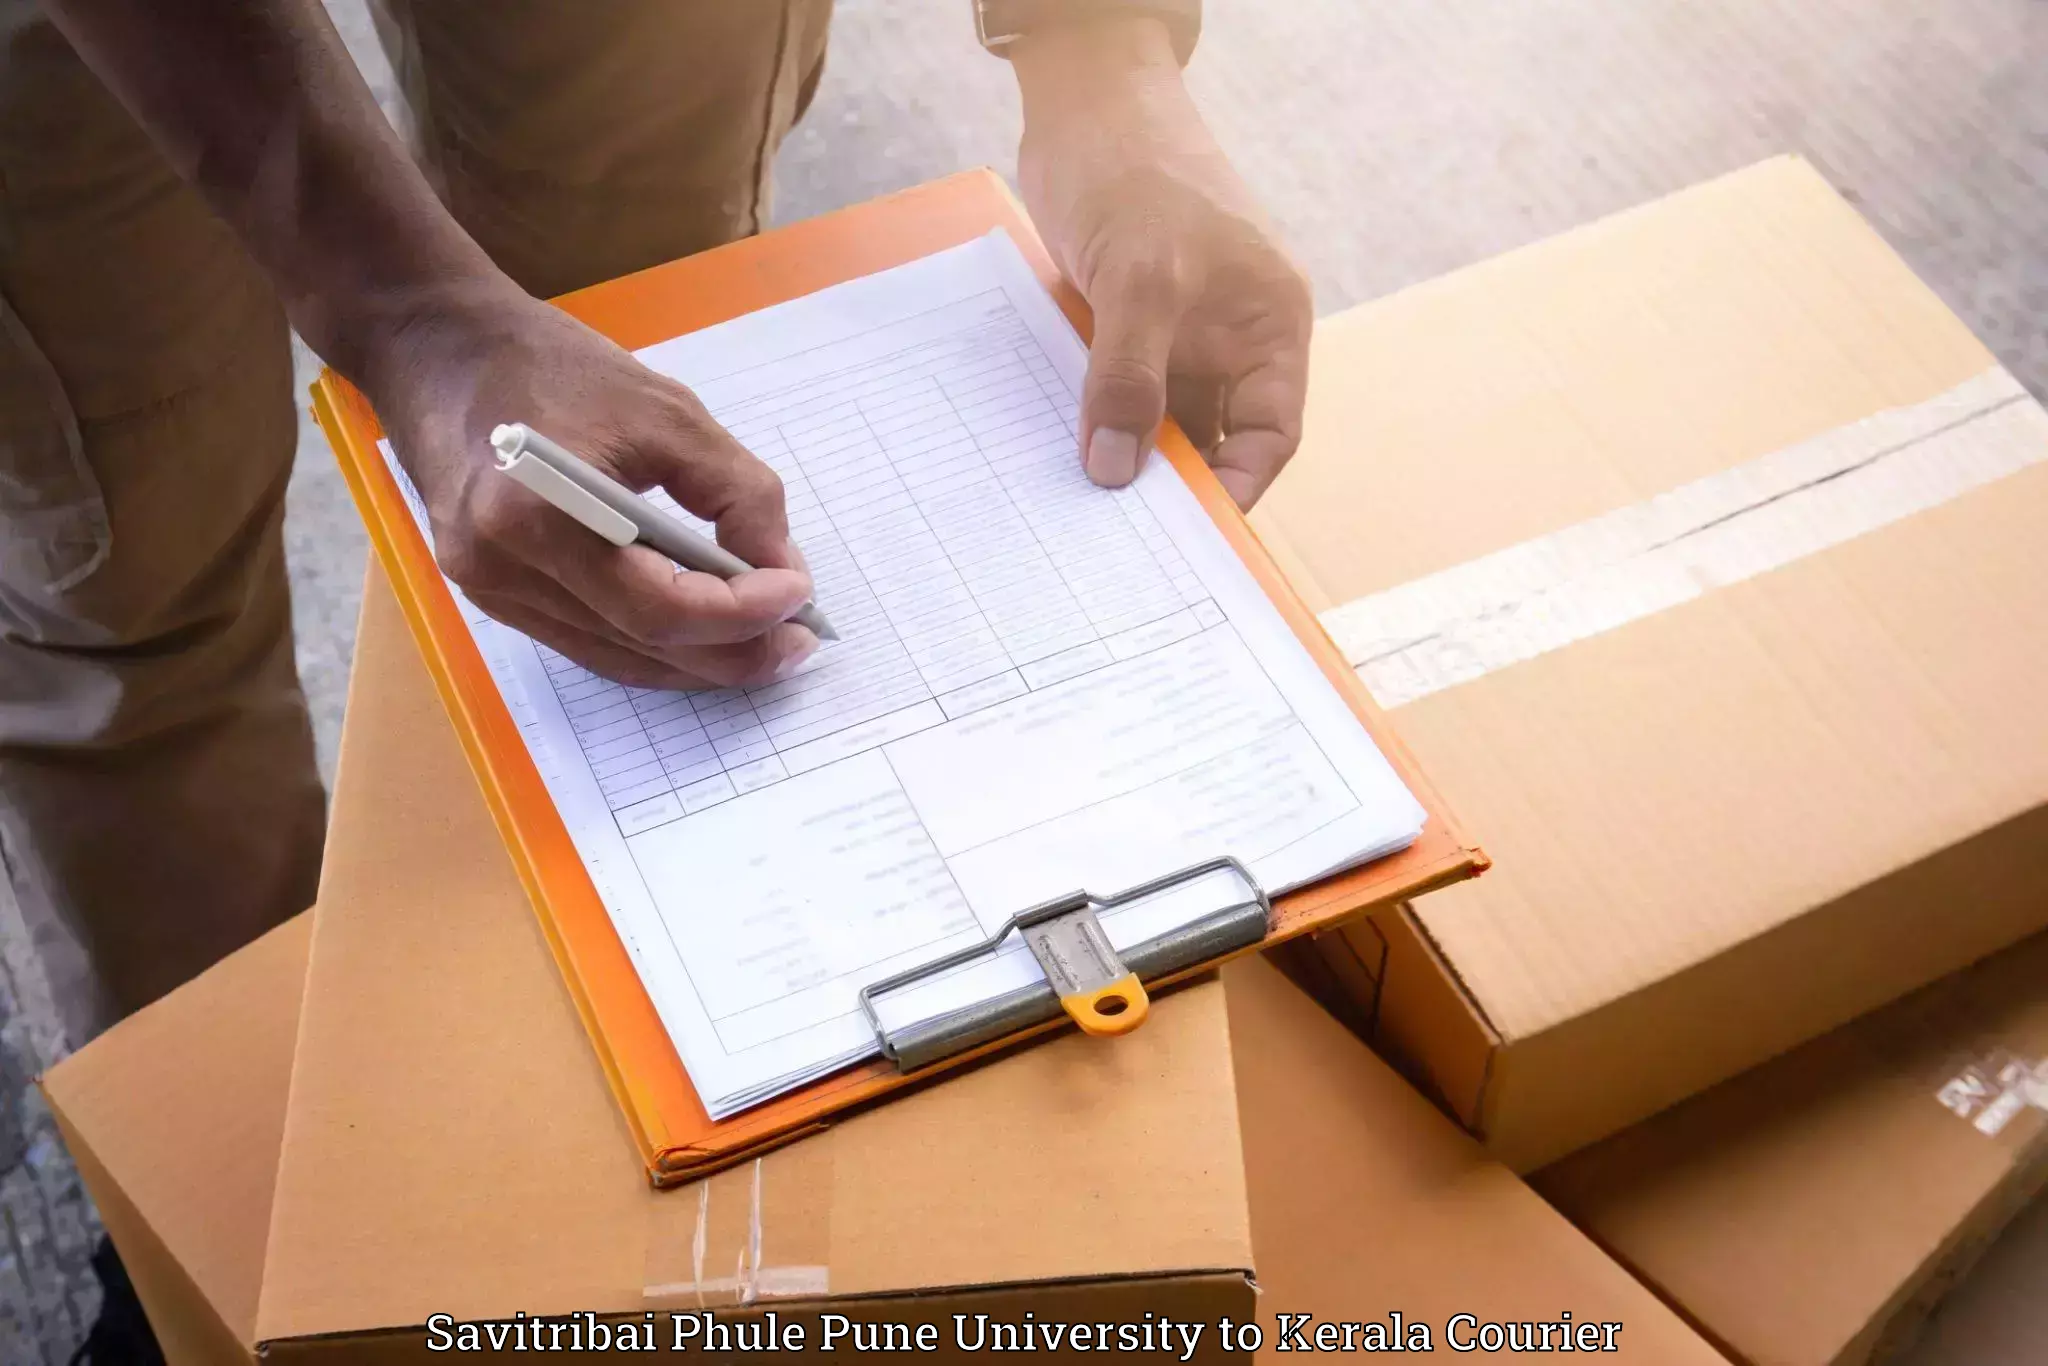 Furniture moving and handling Savitribai Phule Pune University to Kerala